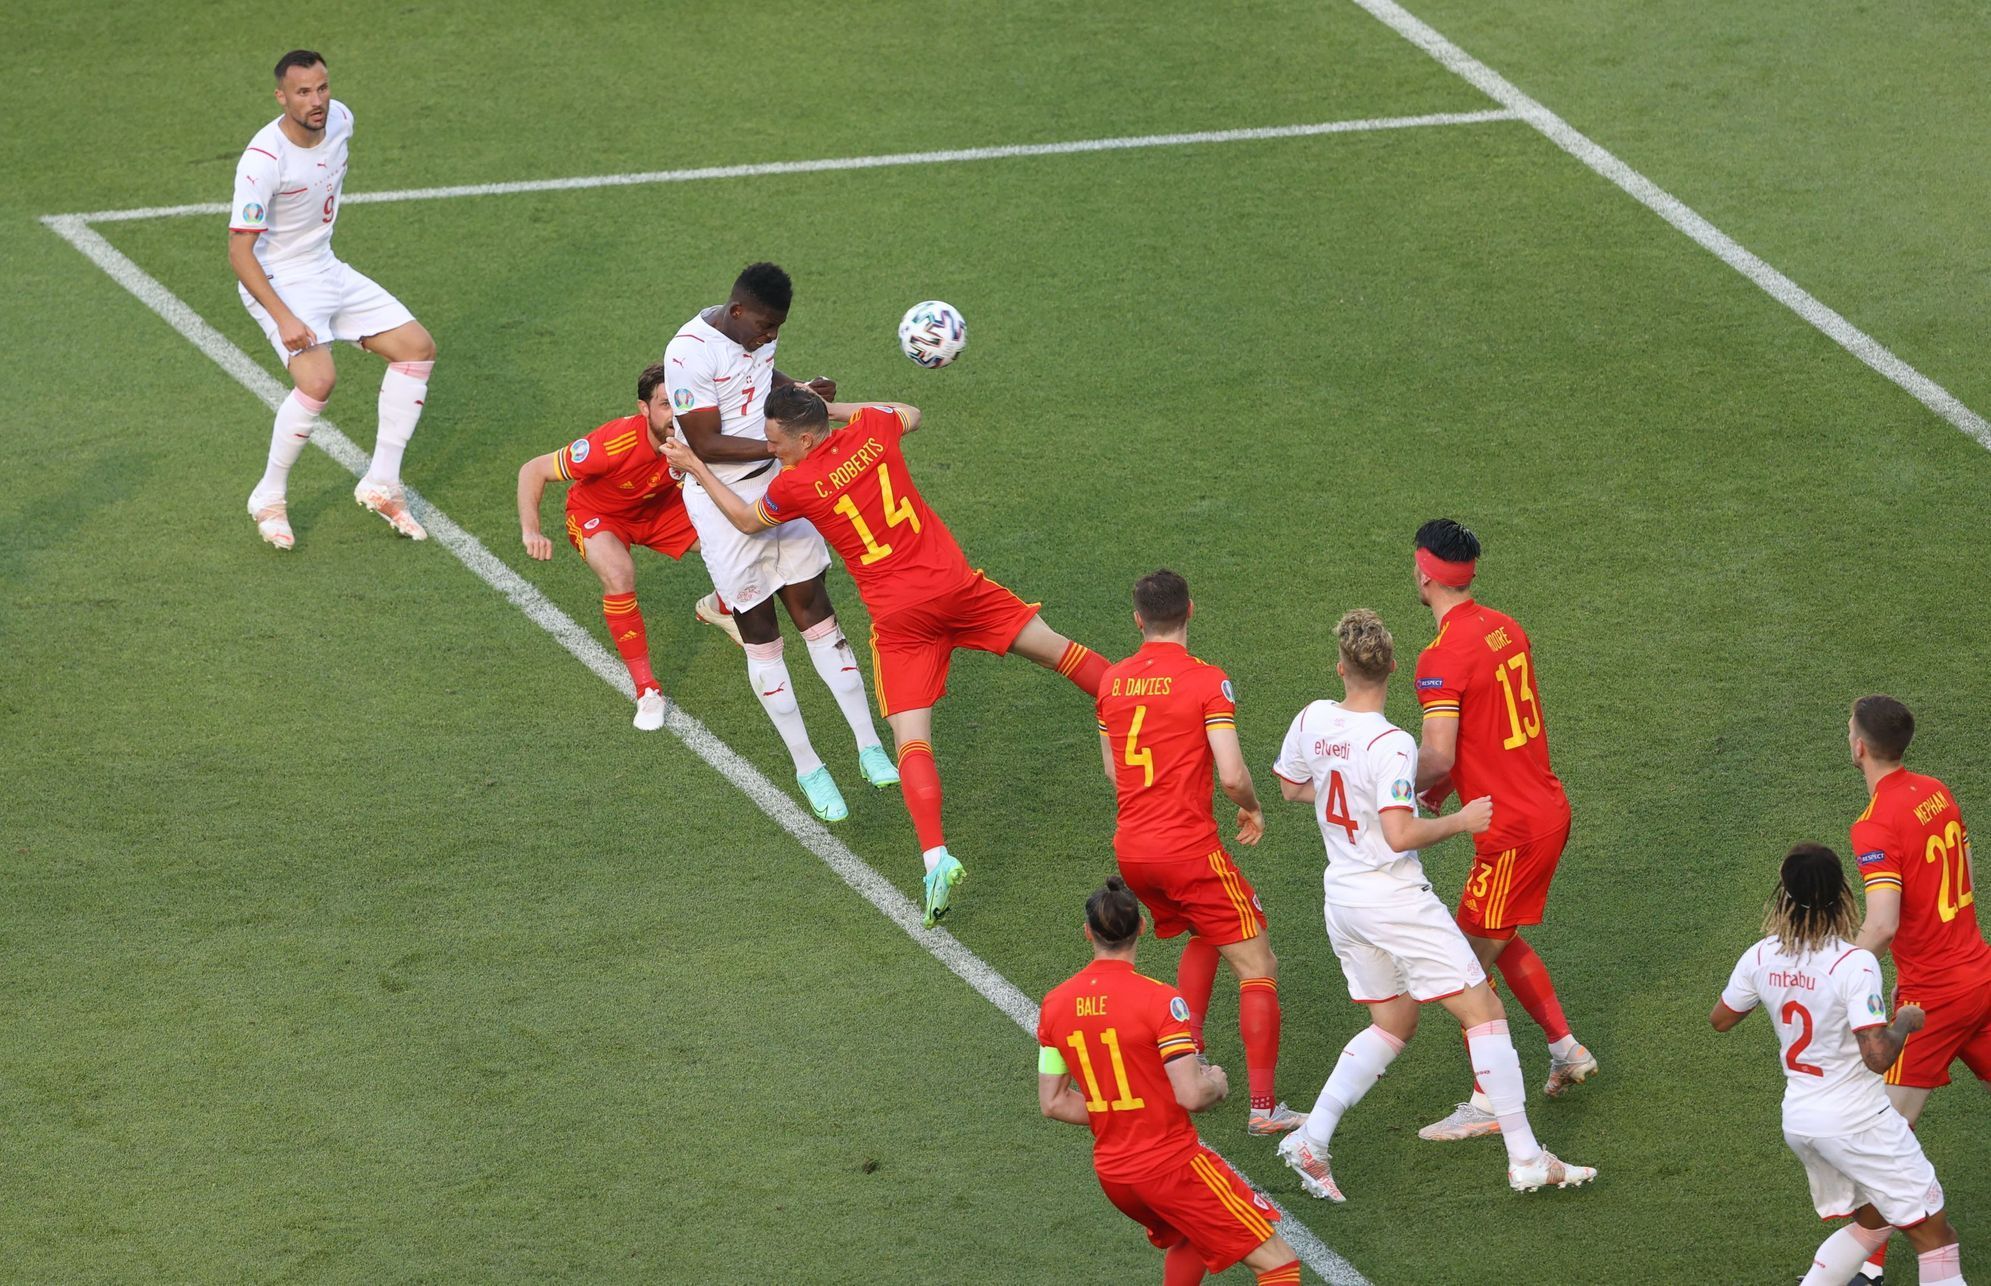 Breel Embolo dává gól na 1:0 v zápase Švýcarsko - Wales na ME 2020